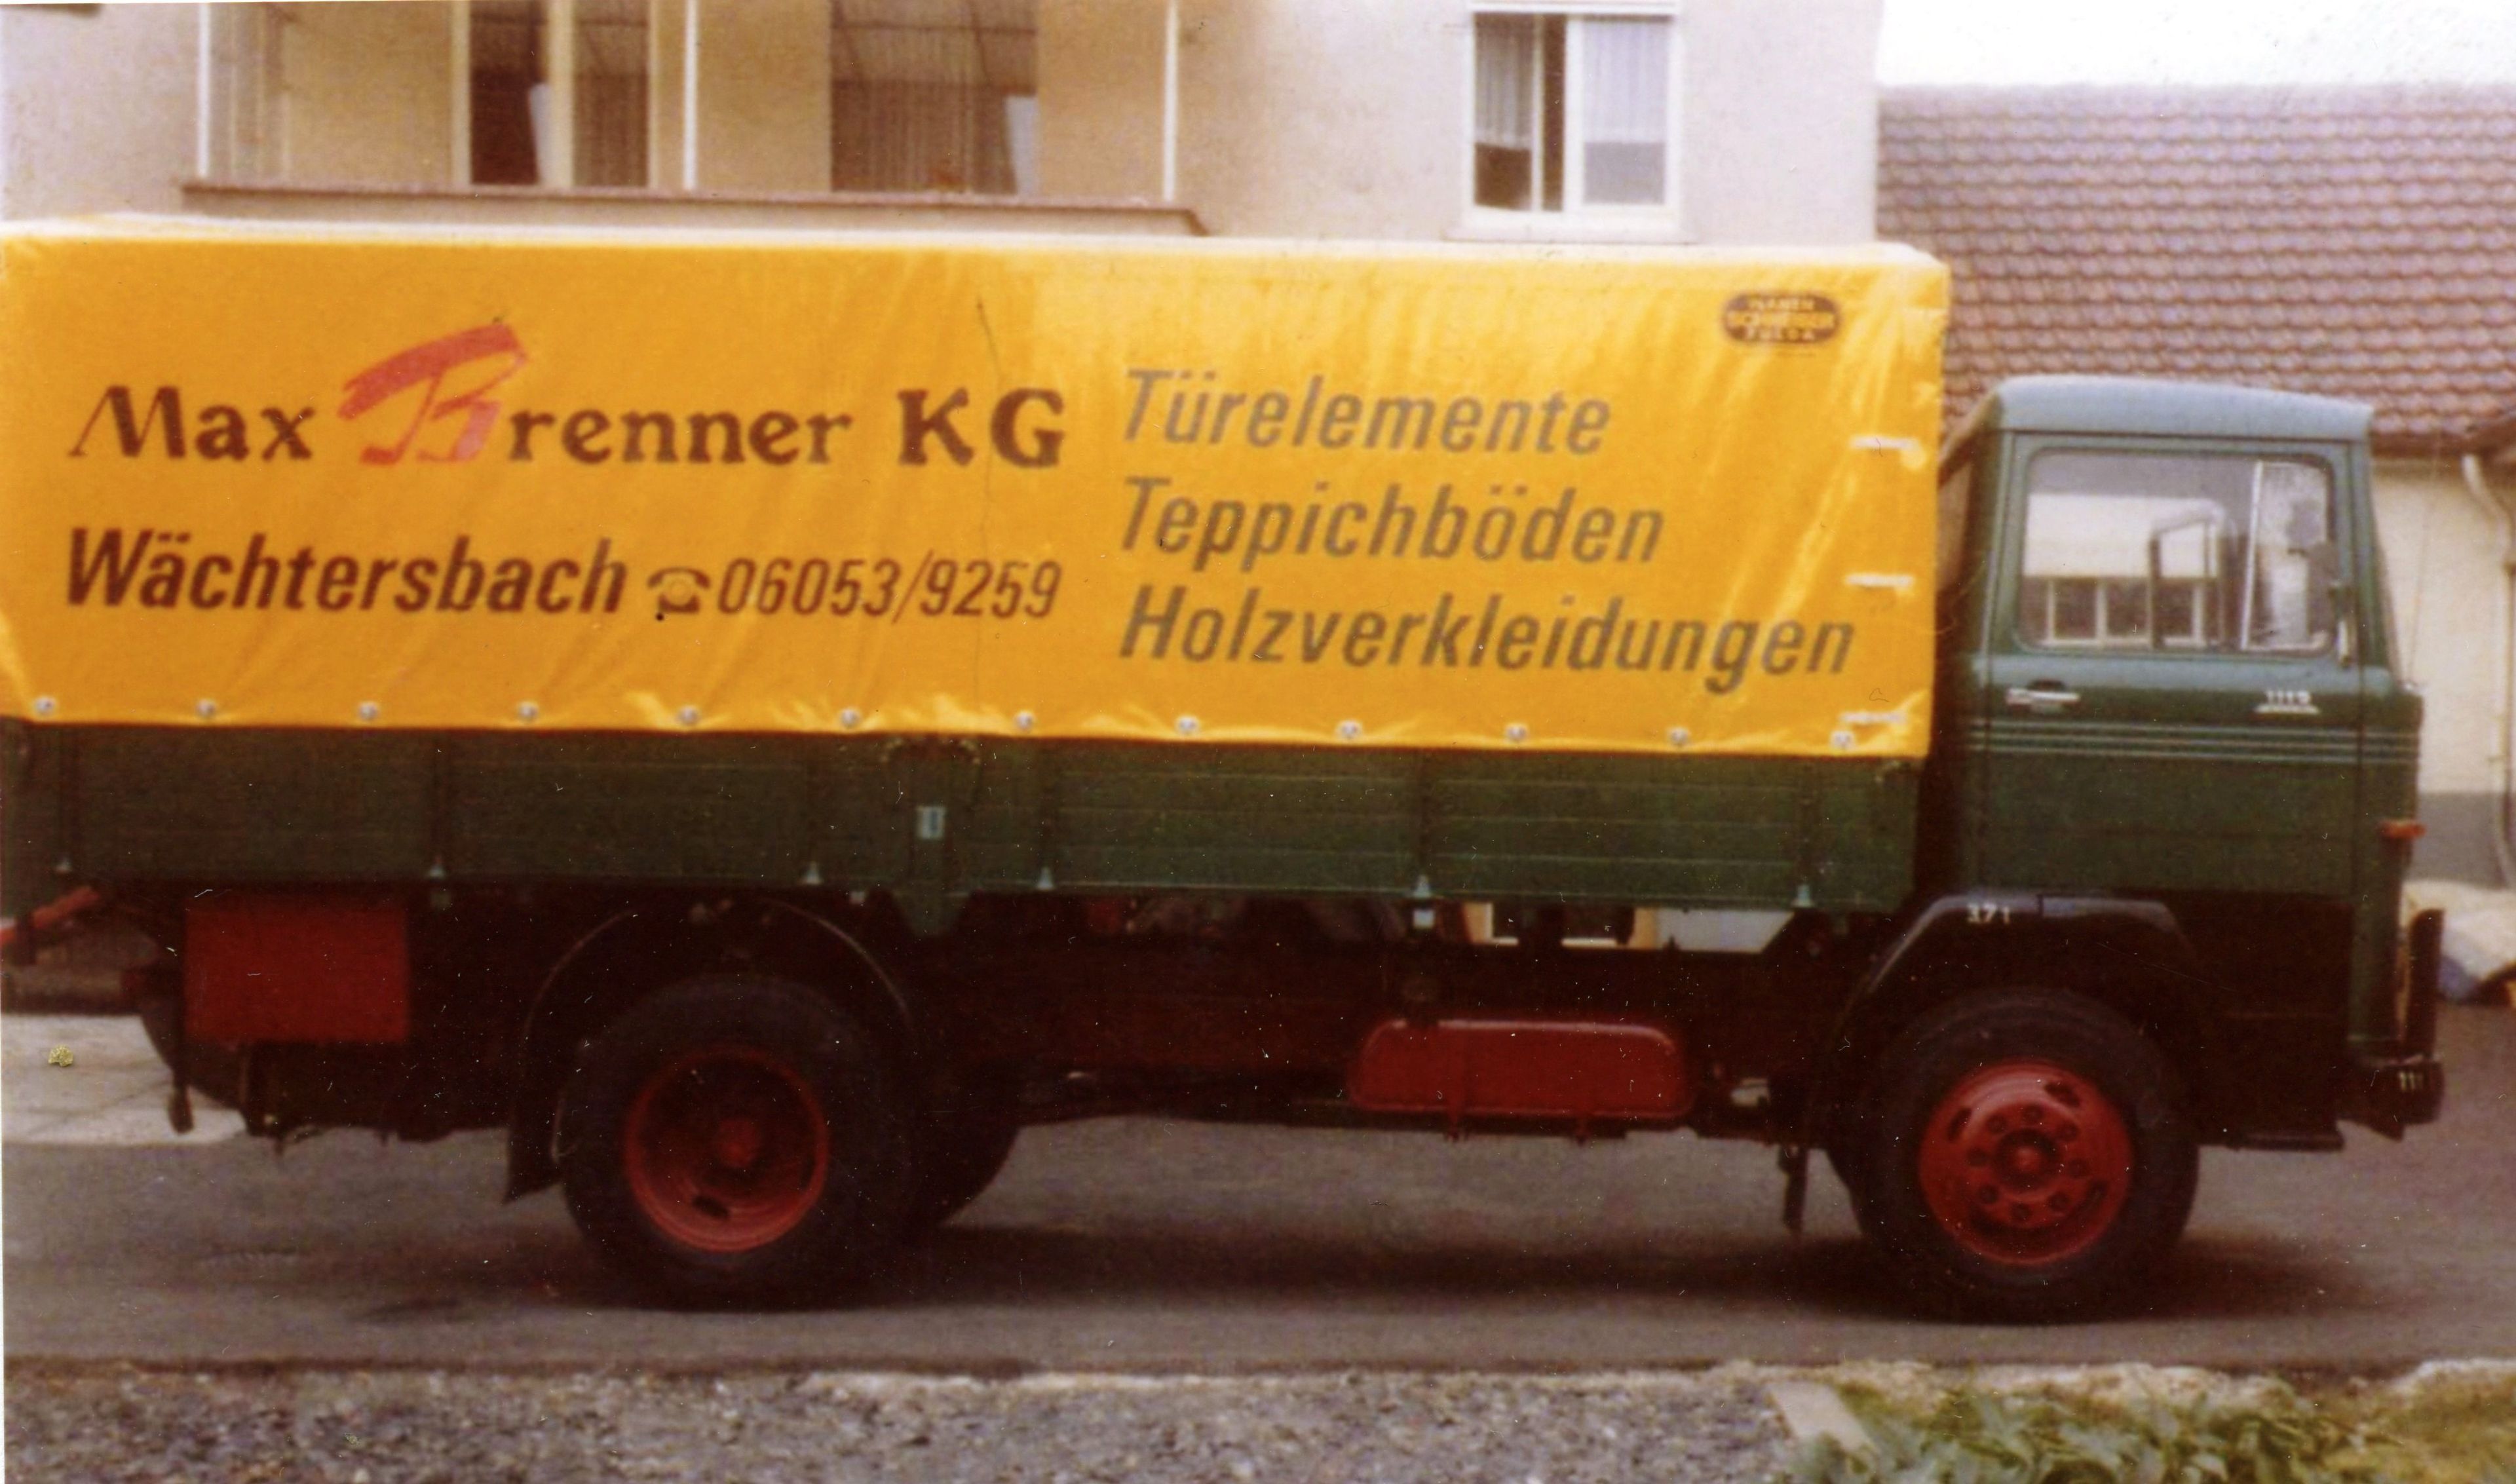 Firmen LKW der Max Brenner KG Wächtersbach